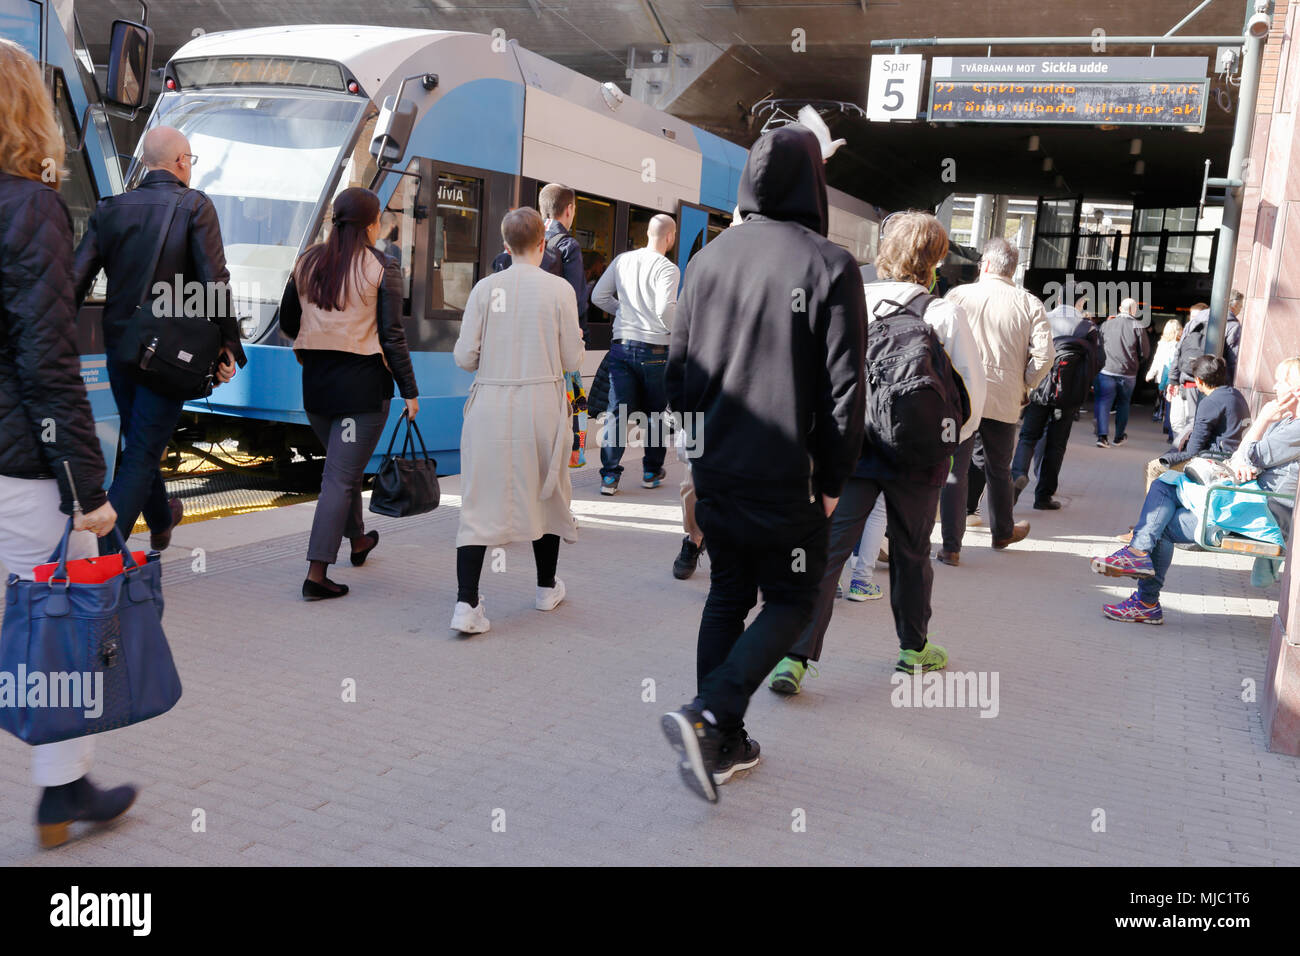 Stockholm, Schweden - 2. Mai 2016: Die Passagiere haben die Straßenbahn auf Tvarbanan an der Haltestelle Alvik Nabe und gehen Sie in Richtung der U-Bahn-Station Alvik links. Stockfoto